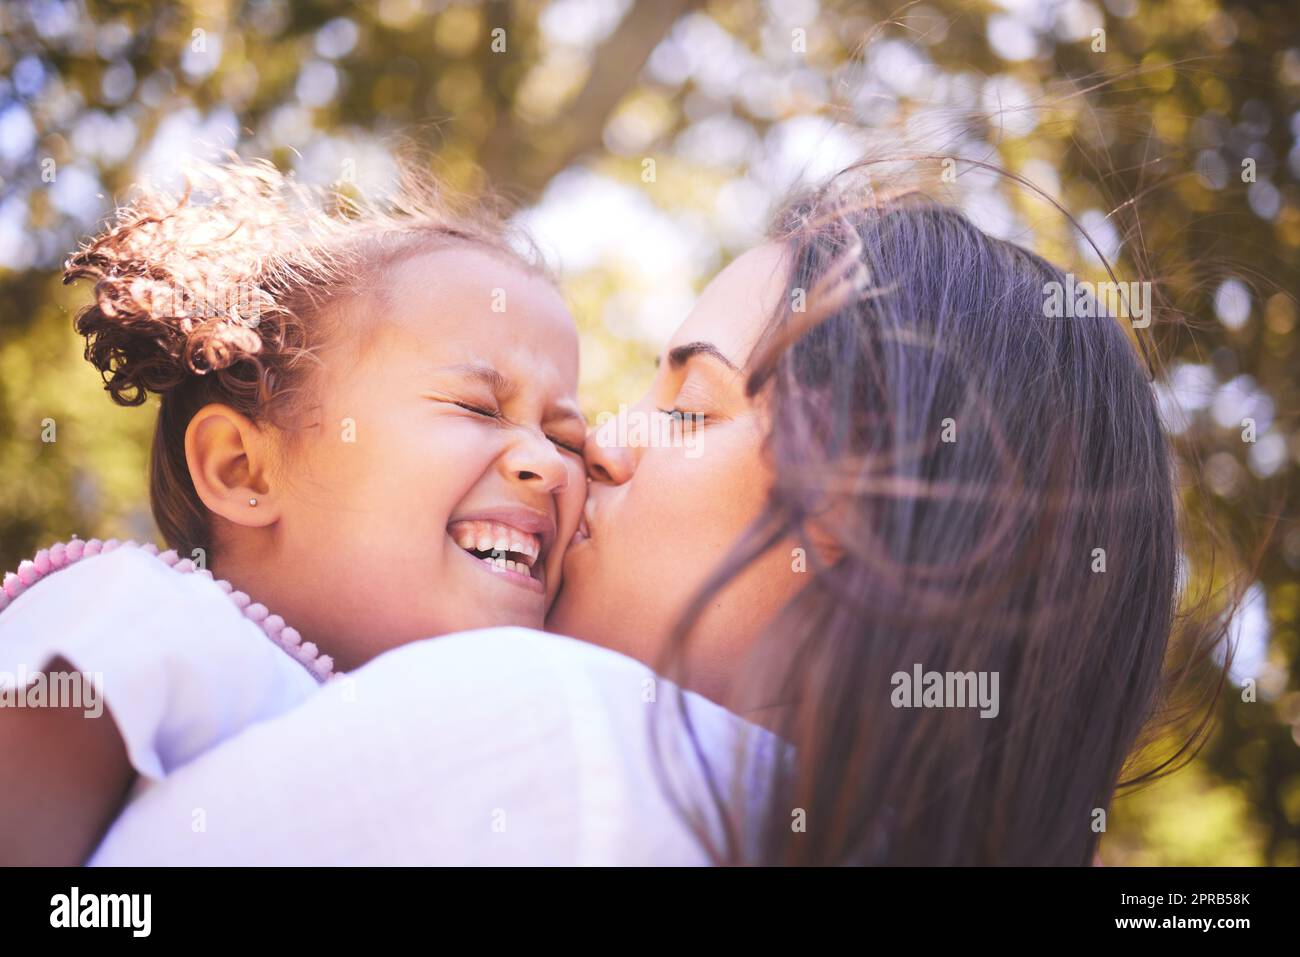 Ich konnte diese Wangen für immer. Eine junge Mutter küsste ihre Tochter liebevoll auf die Wange. Stockfoto